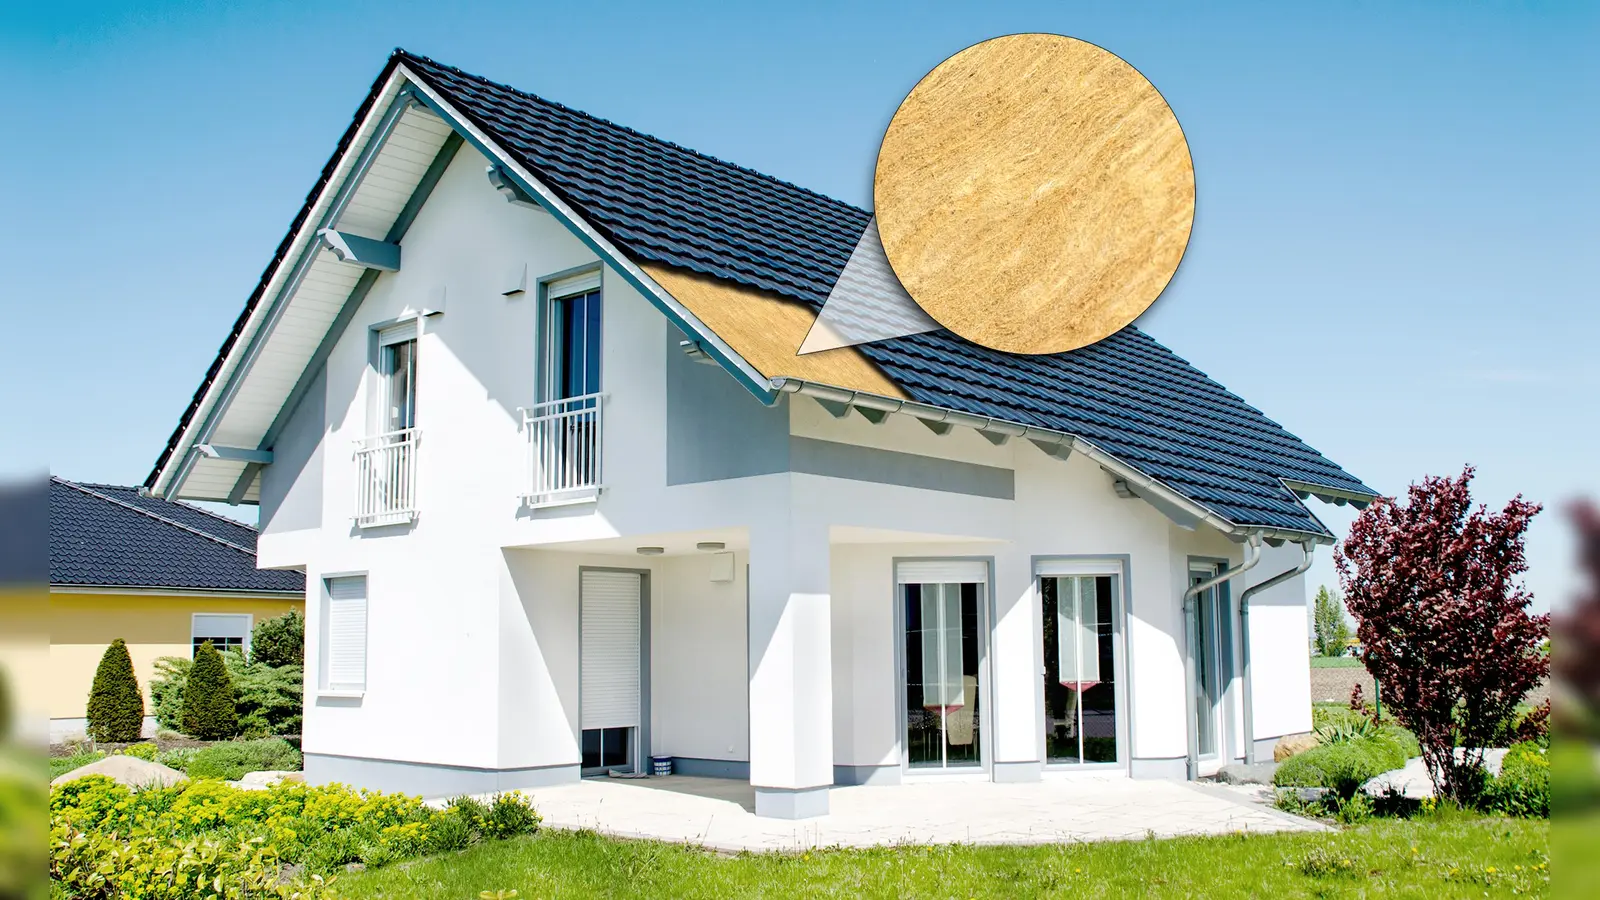 Eine energetische Dachsanierung steigert den Immobilienwert: Neuer Wohnraum entsteht, der Energieverbrauch sinkt und die Behaglichkeit im ganzen Haus steigt. (Foto: FMI Fachverband Mineralwolleindustrie e.V.)